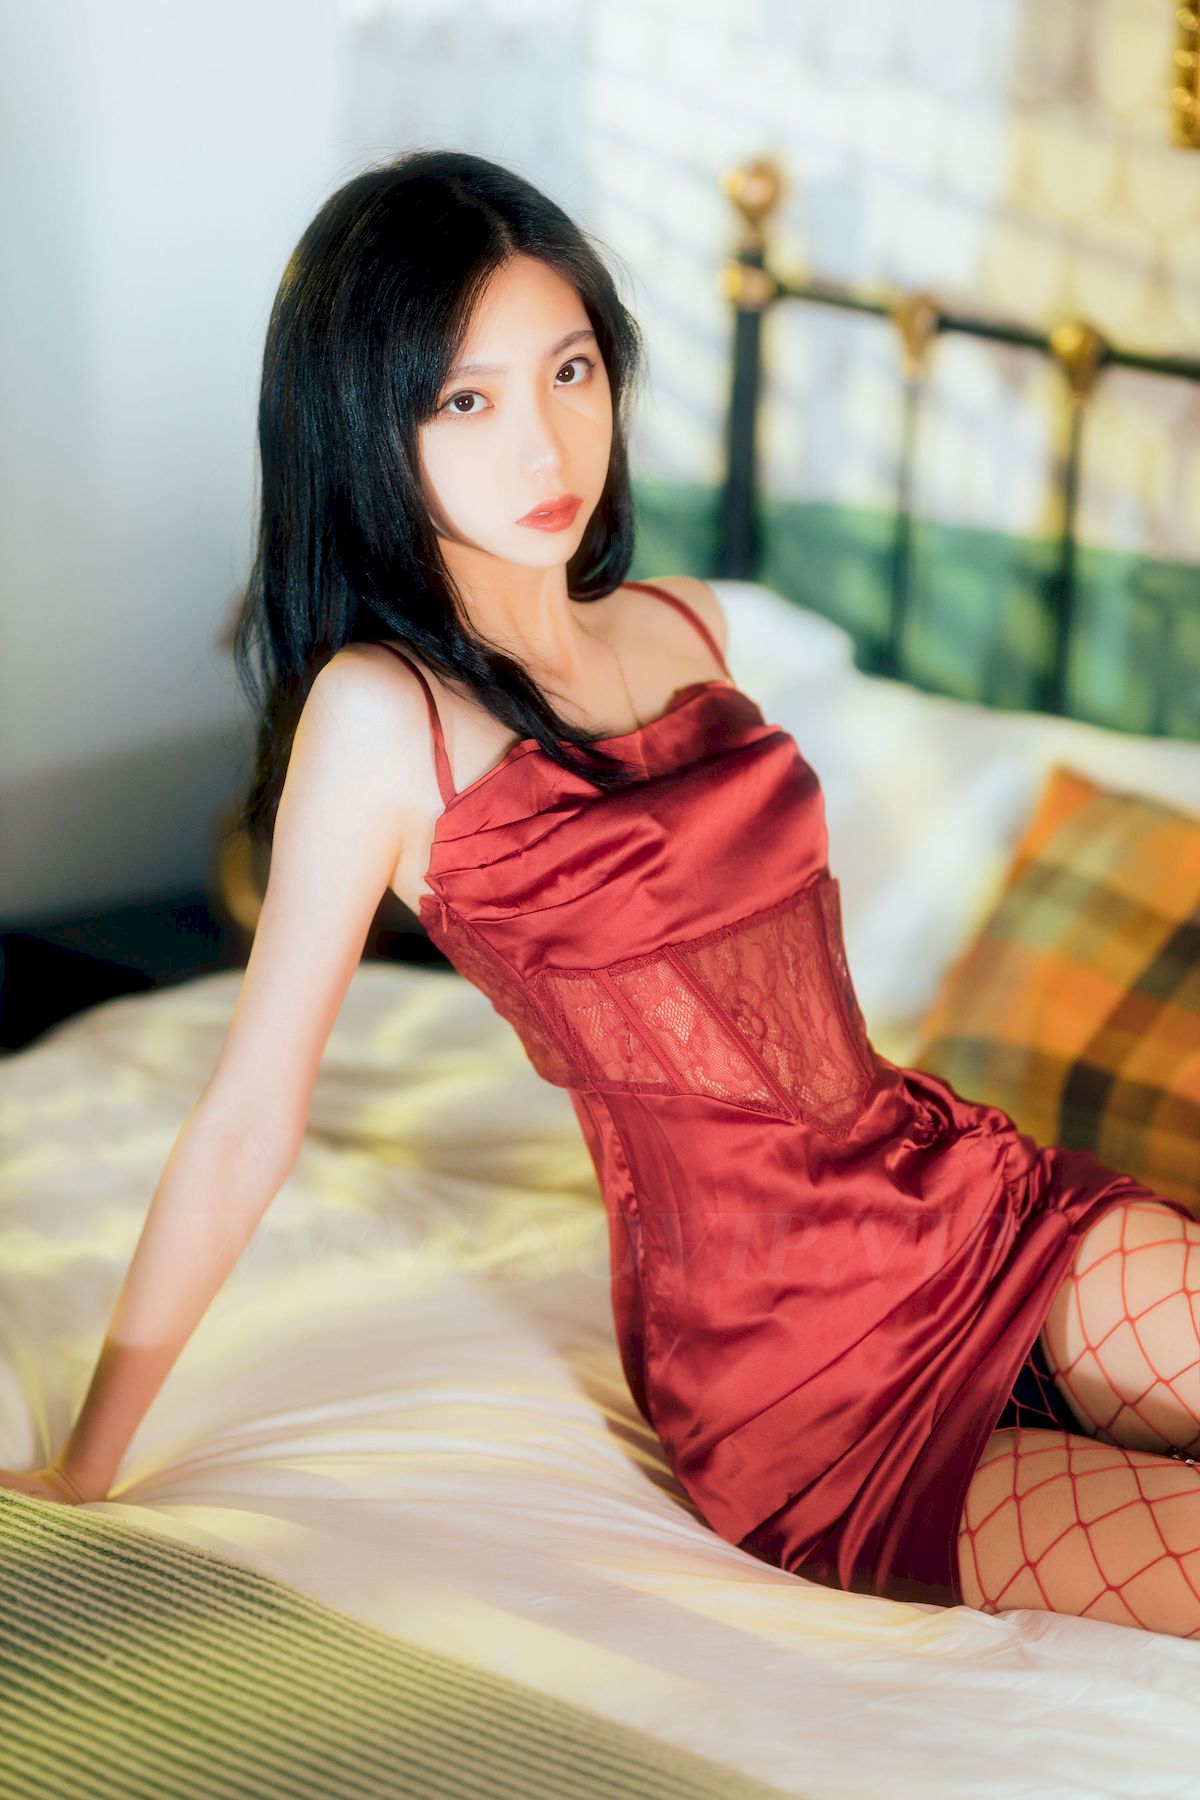 许岚LAN(叁月life)红色网袜搭配红色吊裙写真